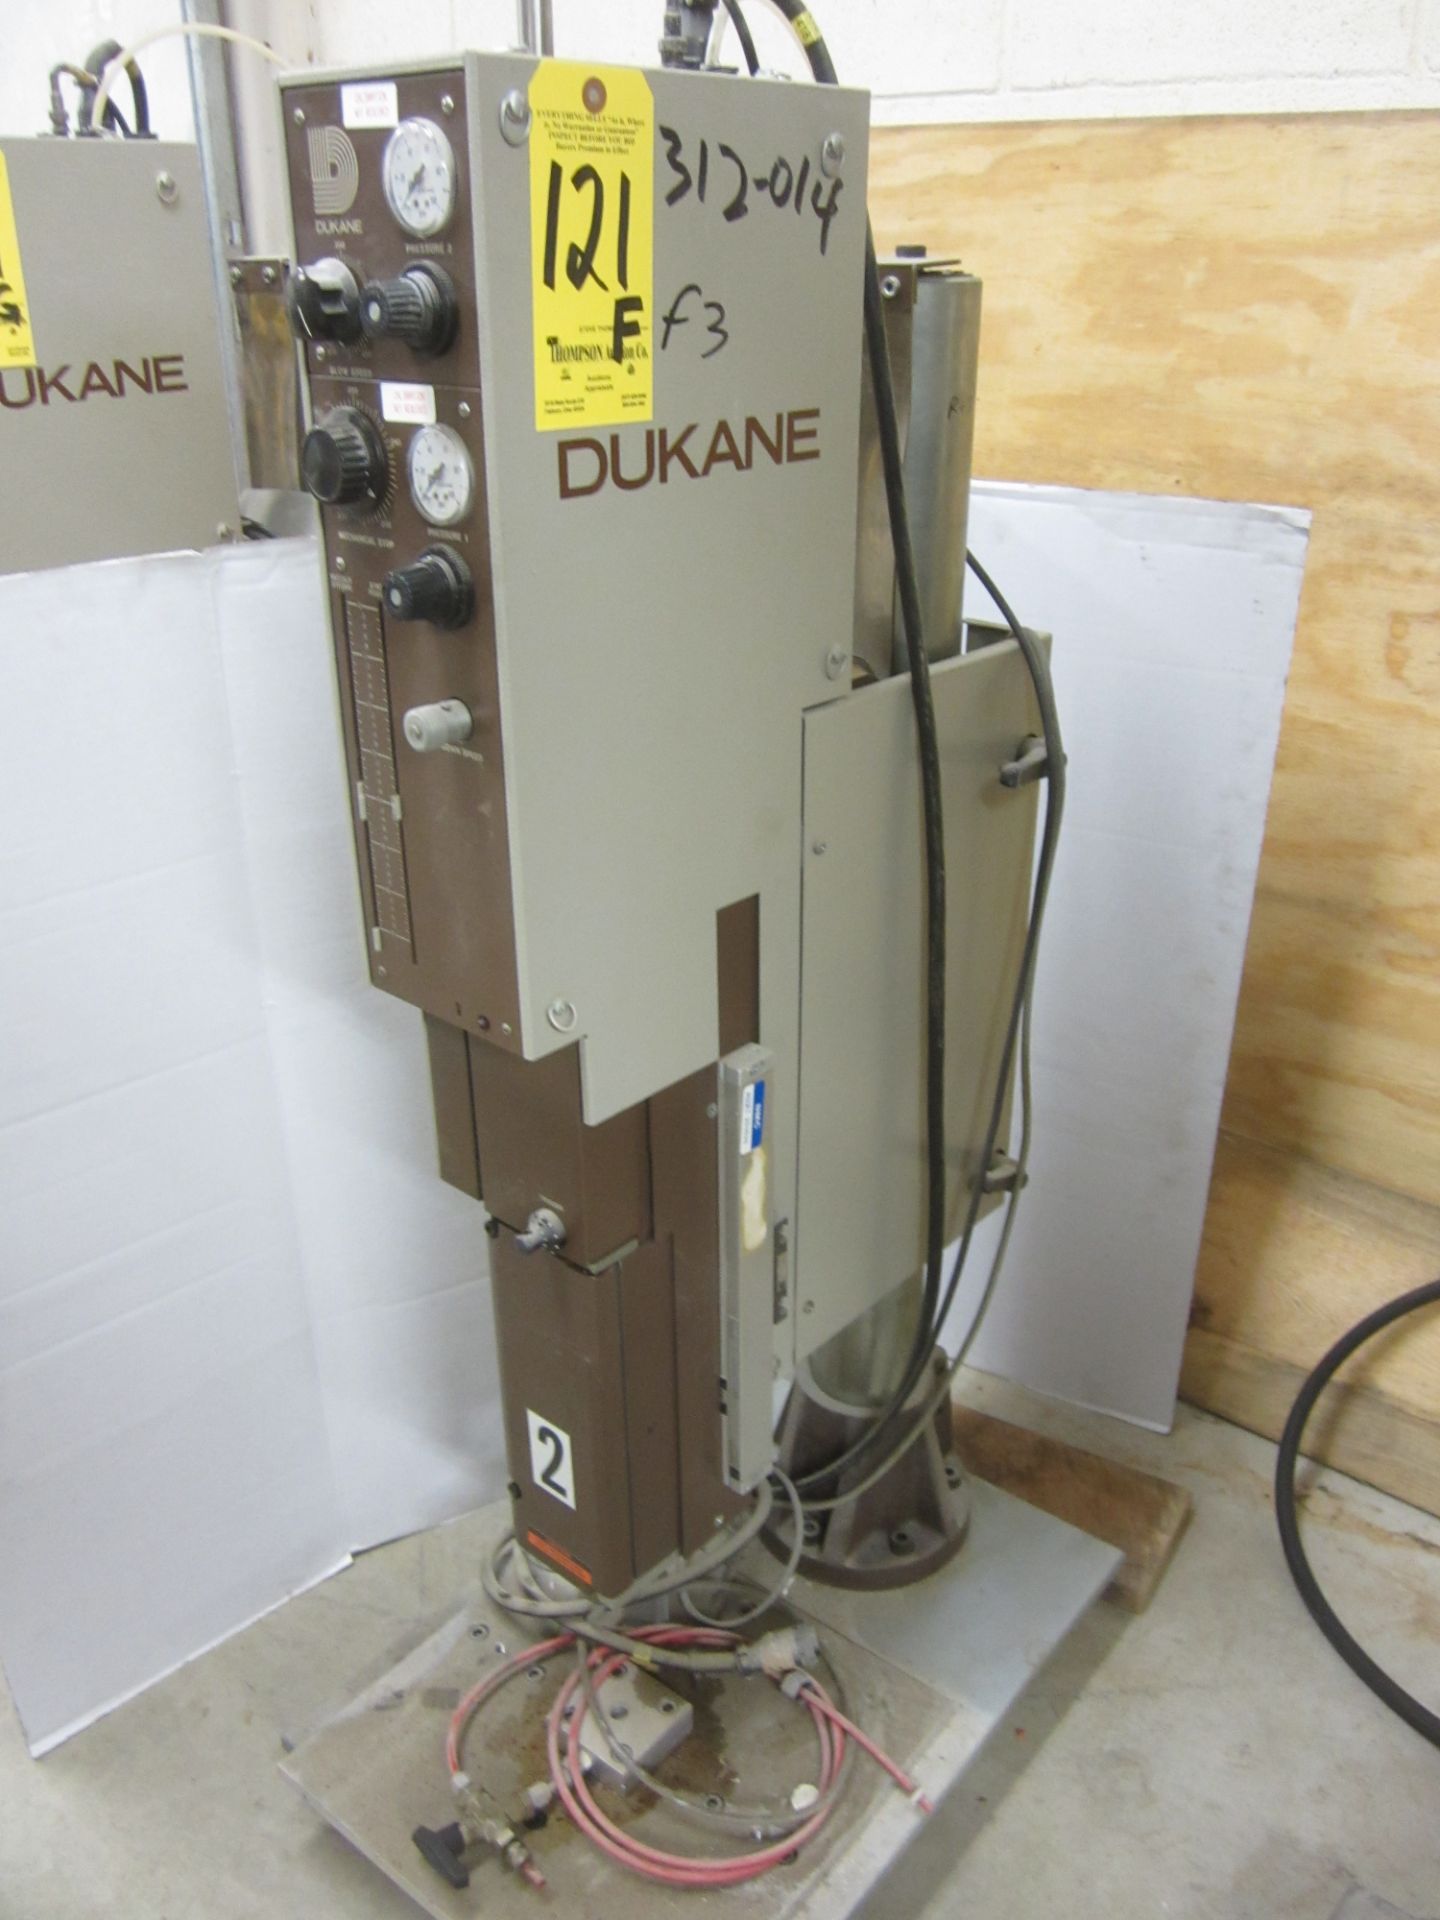 Dukane Model 43A255 Ultrasonic Welder, s/n 41237